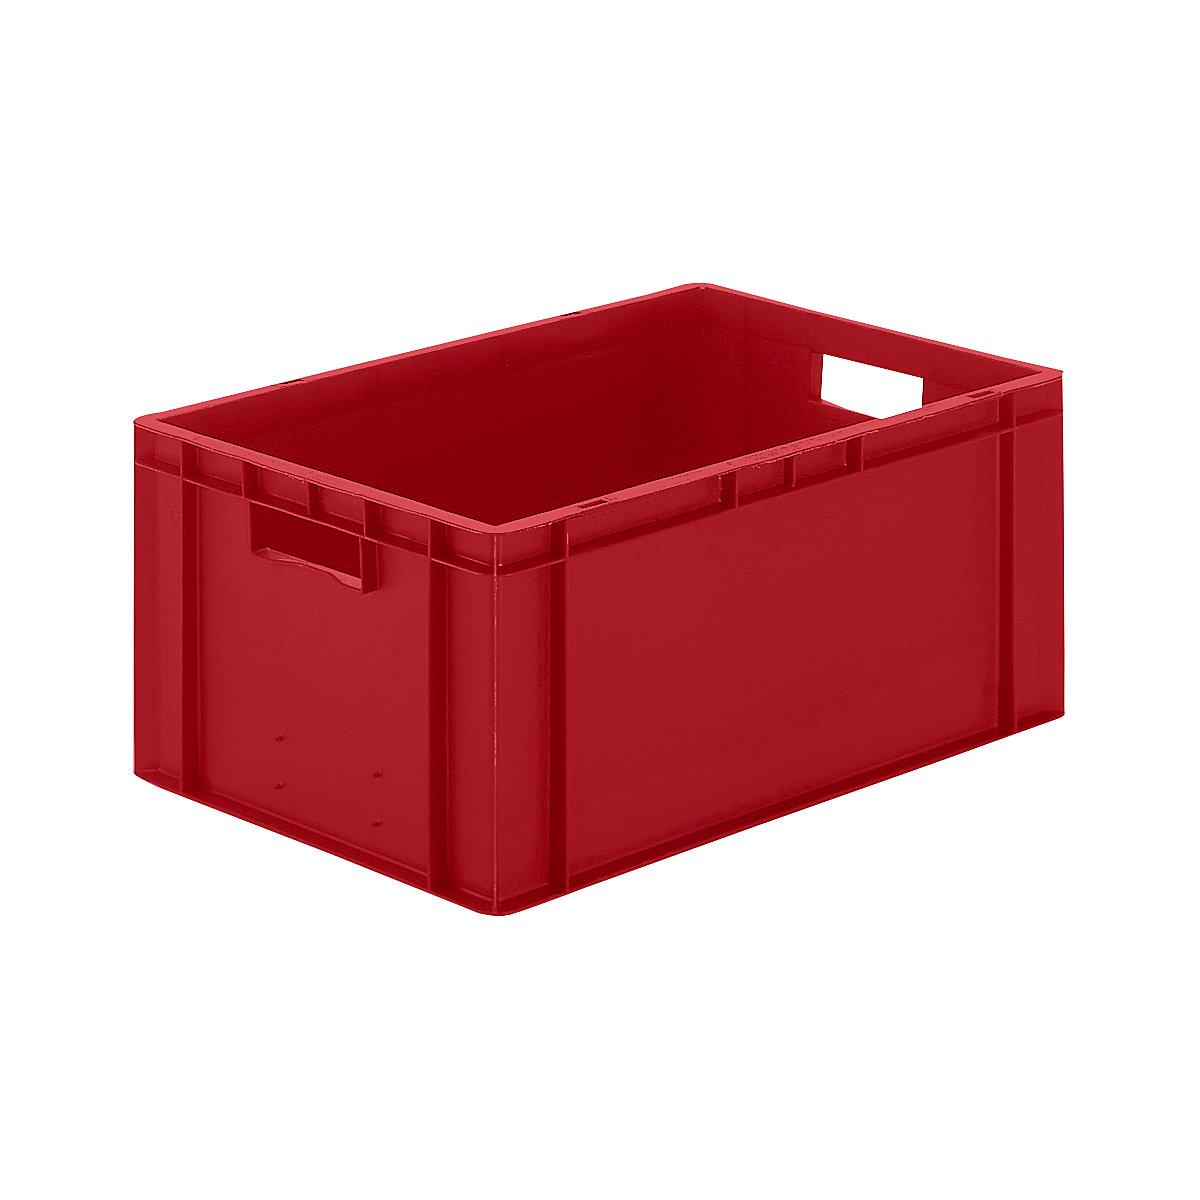 Euro-Format-Stapelbehälter, Wände und Boden geschlossen, LxBxH 600 x 400 x 270 mm, rot, VE 5 Stk